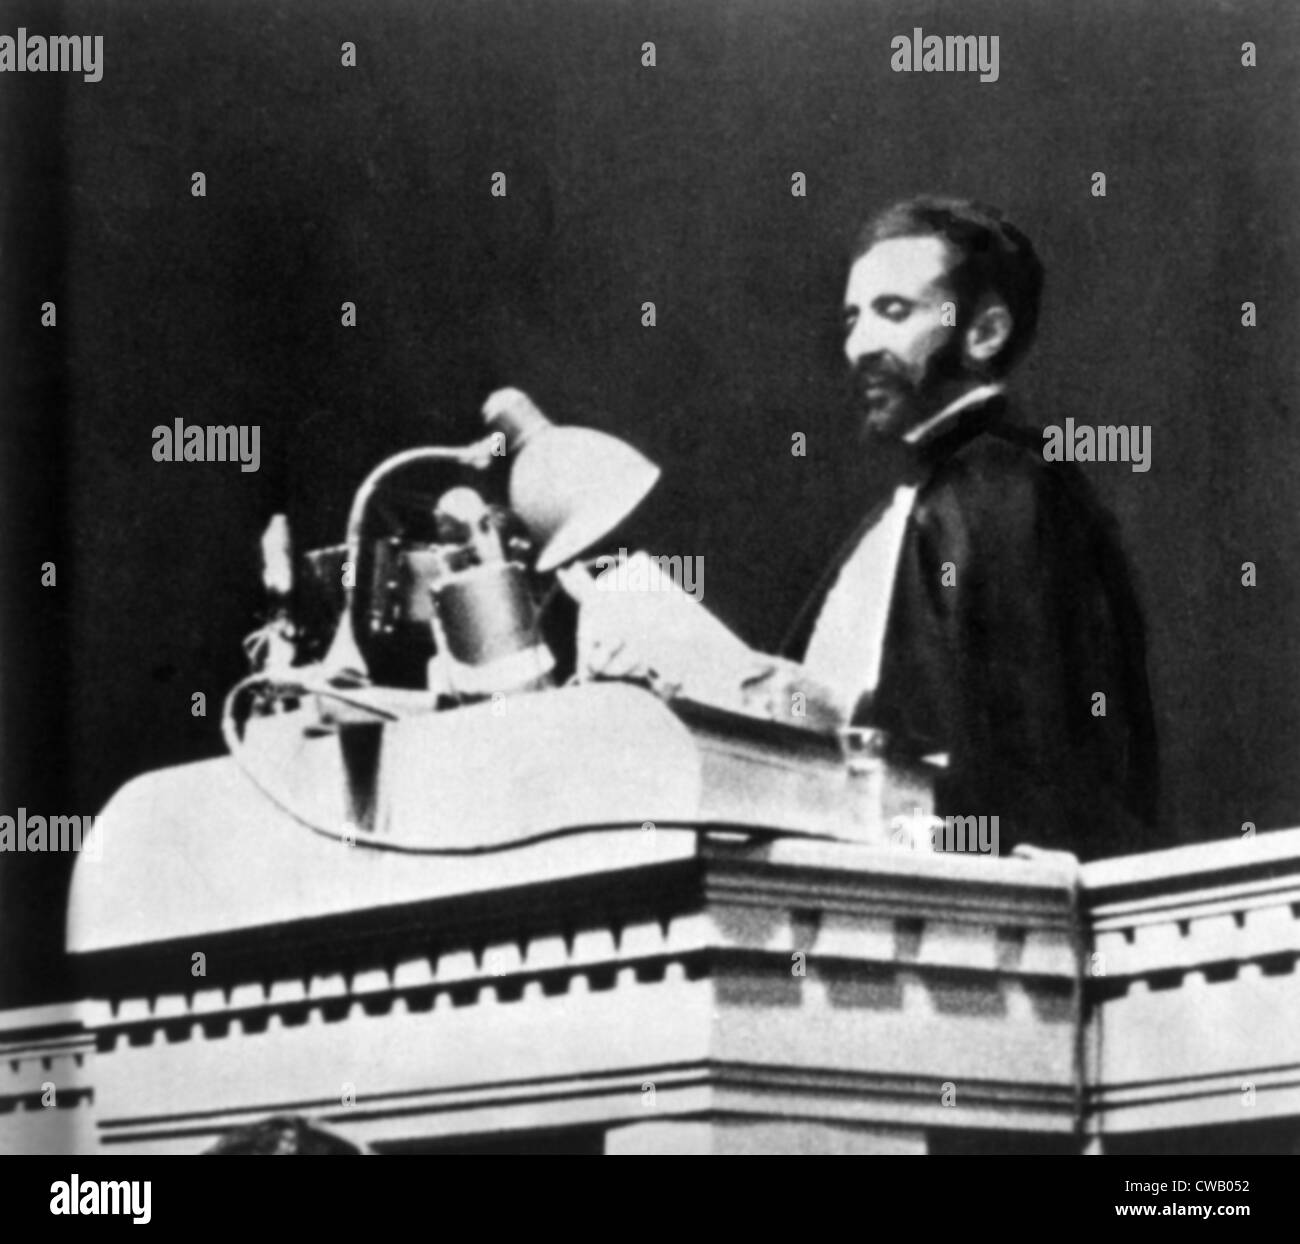 L'imperatore Haile Selassie dell Etiopia appellandosi alla lega delle nazioni per quanto riguarda Italia dell' invasione del suo paese, 1936 Foto Stock